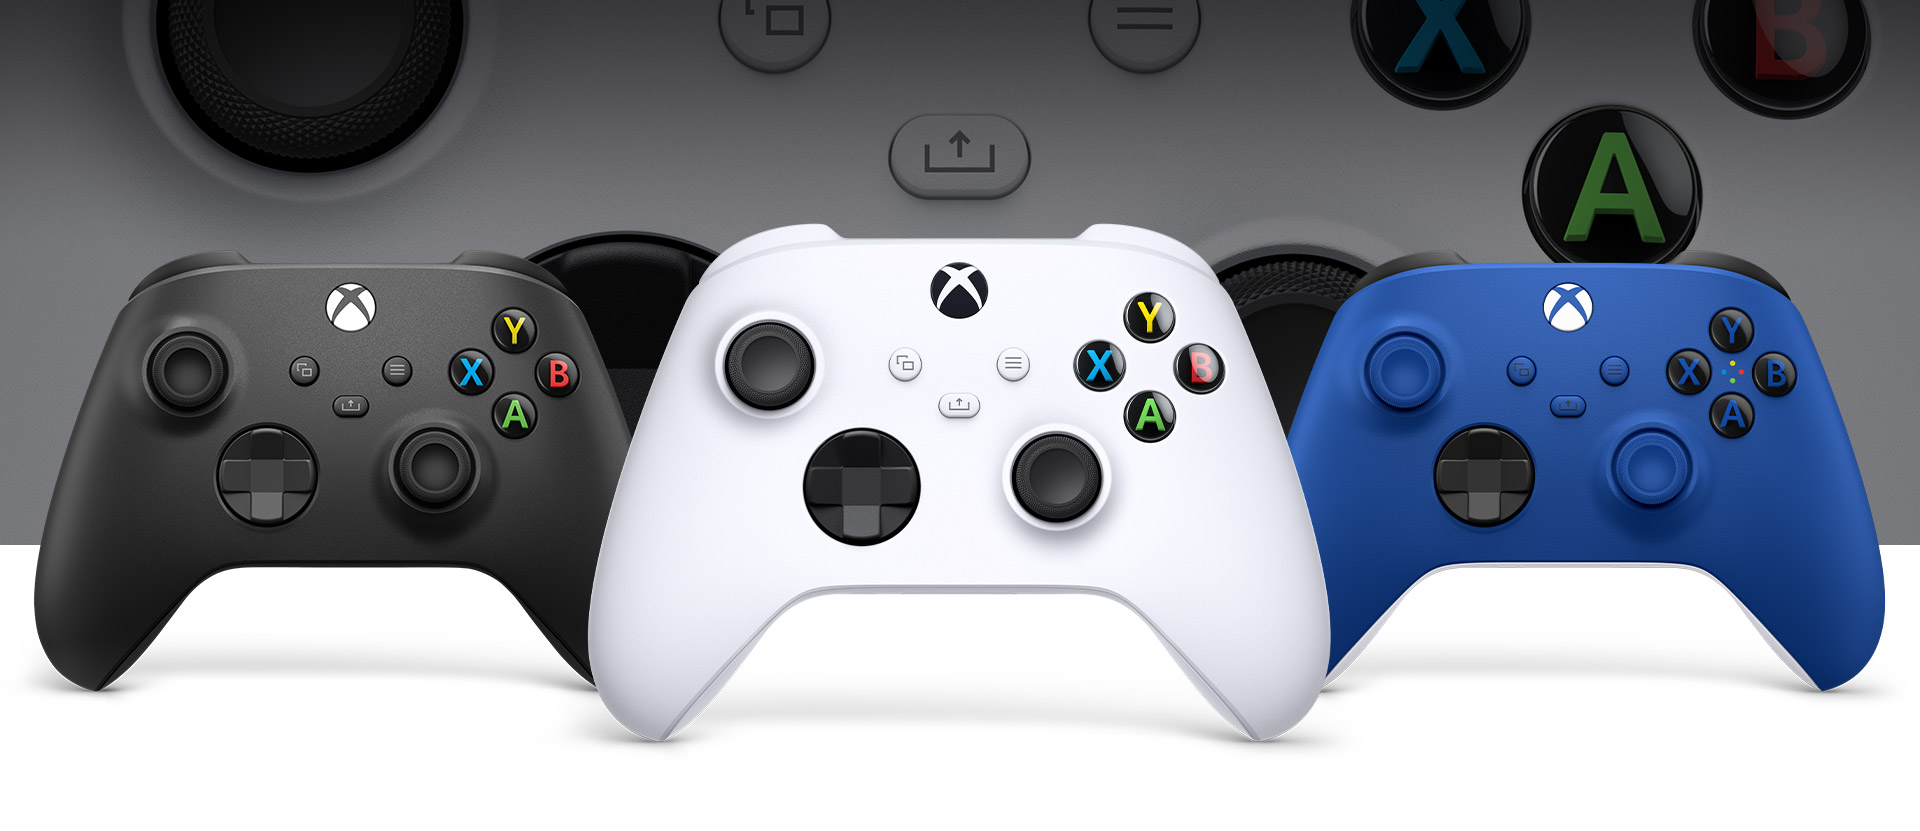 Mando Xbox en blanco robot delante, con un mando de color negro carbón a la izquierda y un mando de color azul eléctrico a la derecha